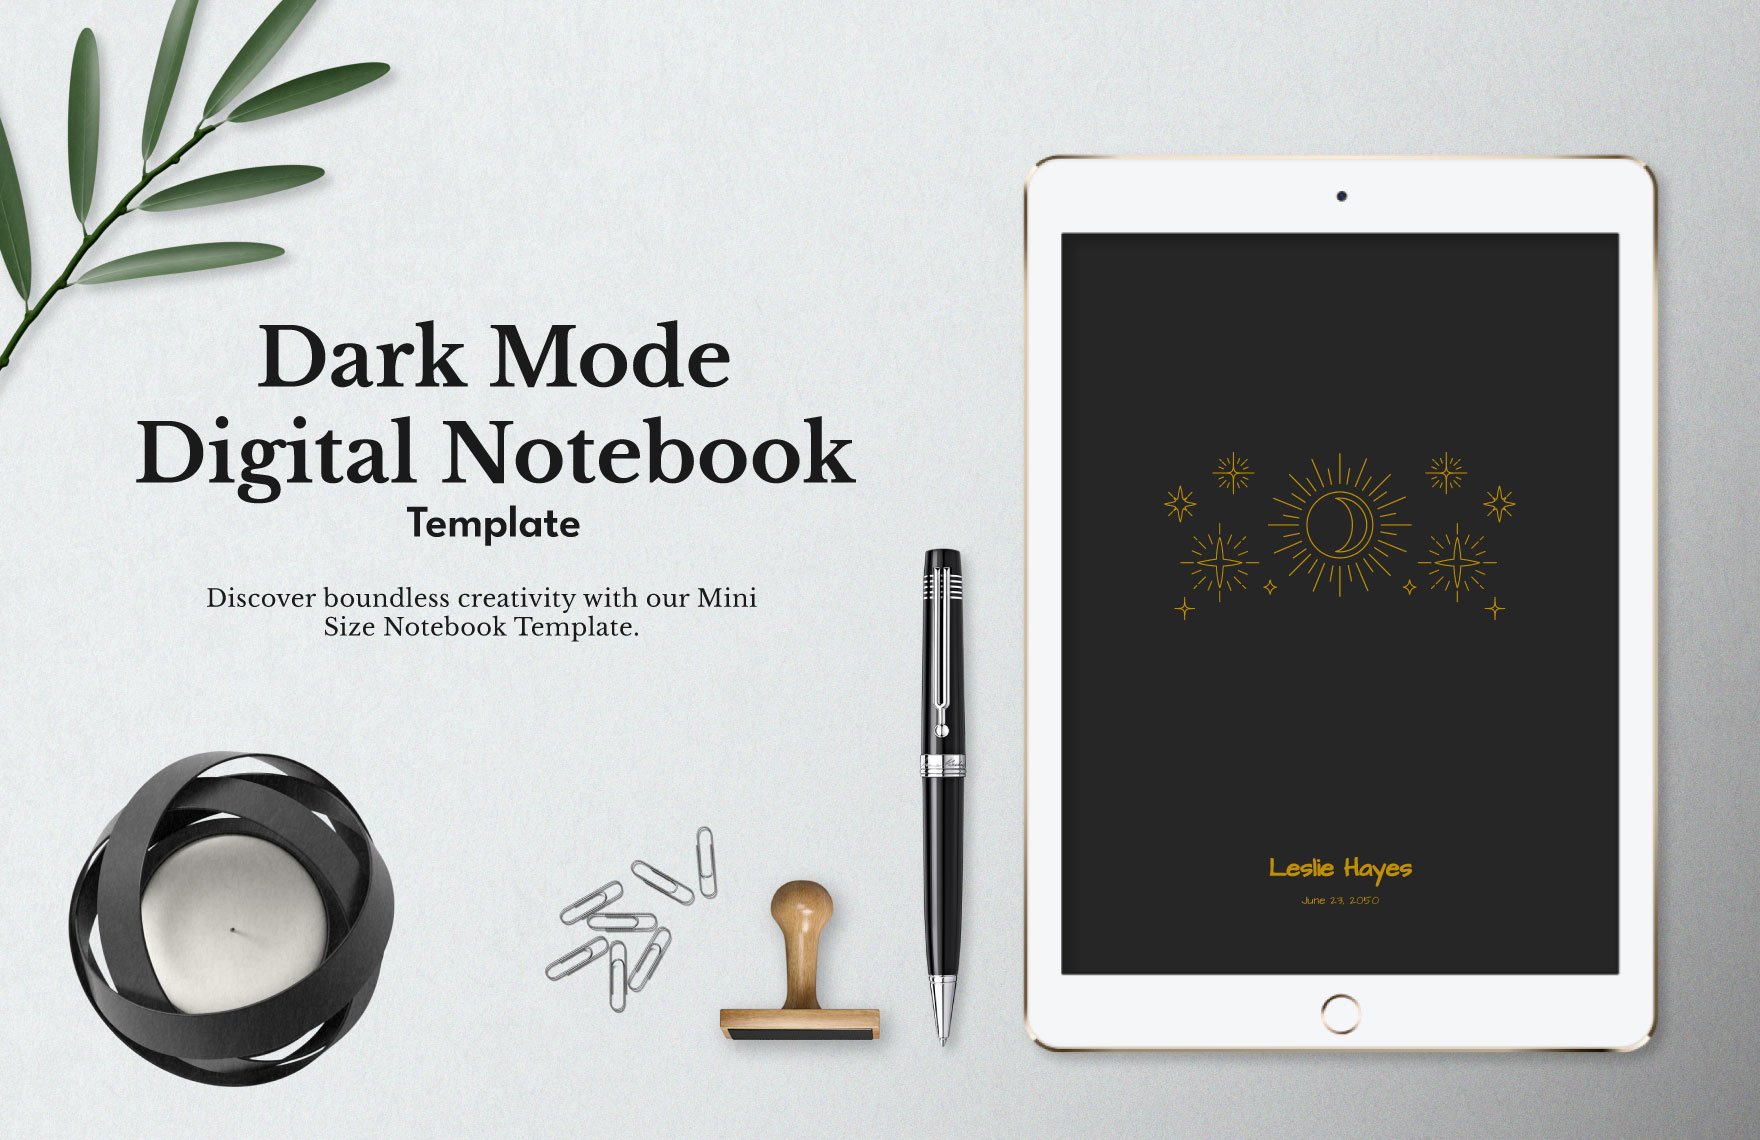 Dark Mode Digital Notebook Template